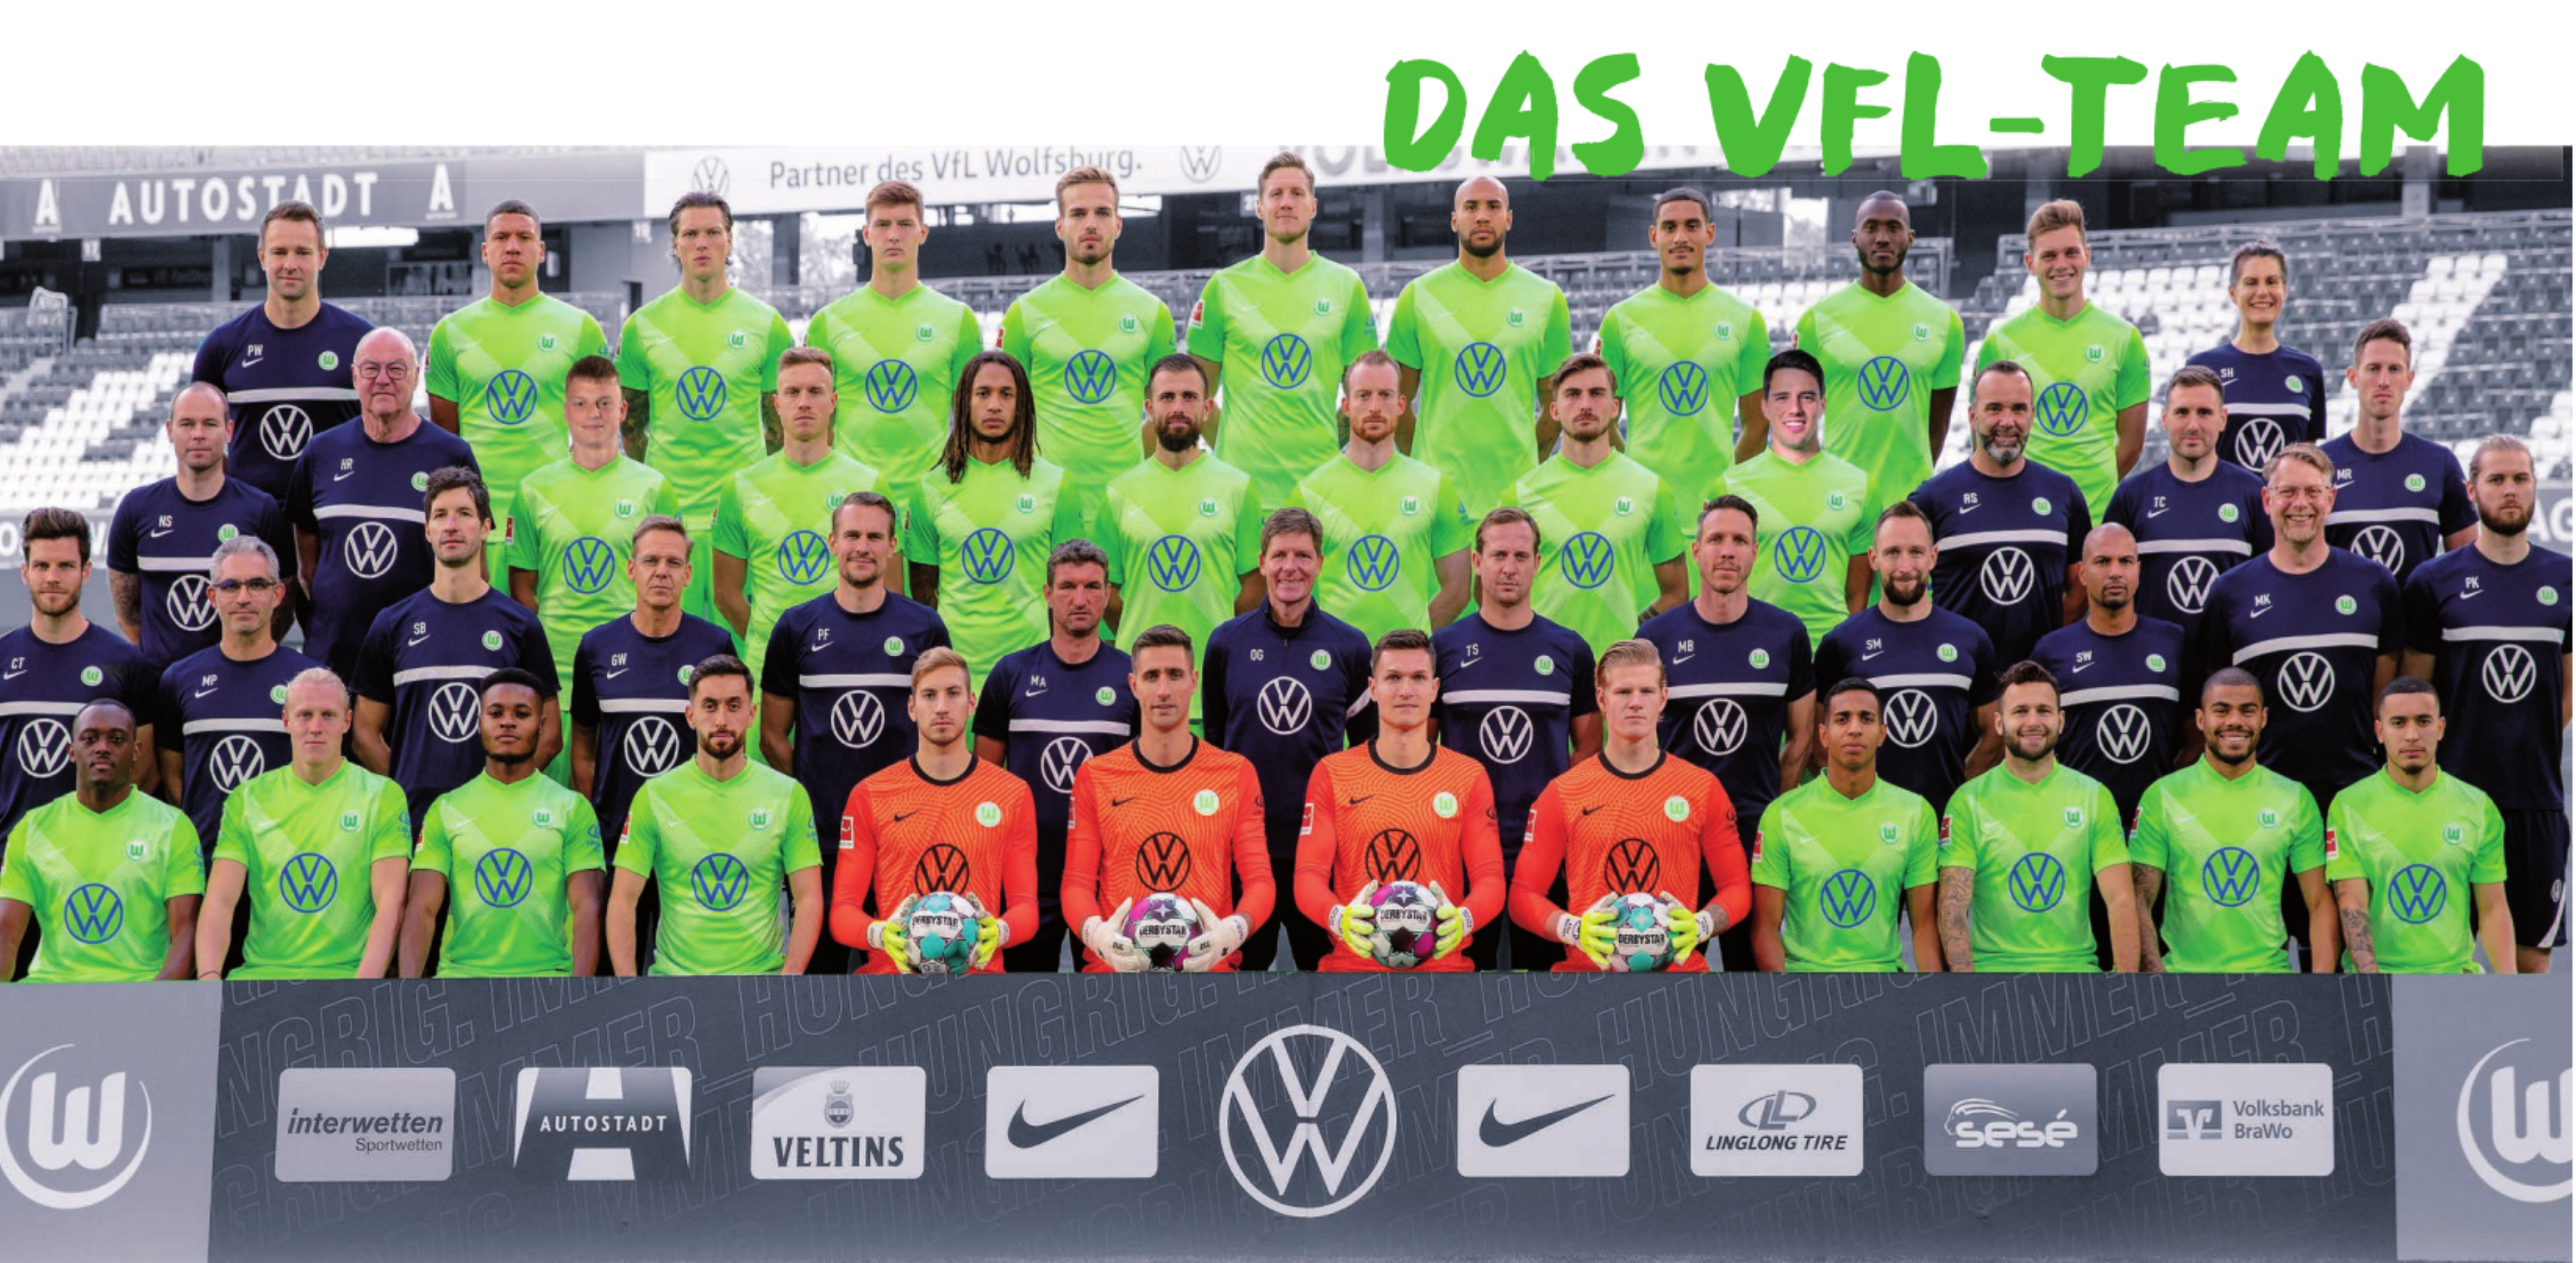 Das VfL-Team Image 1